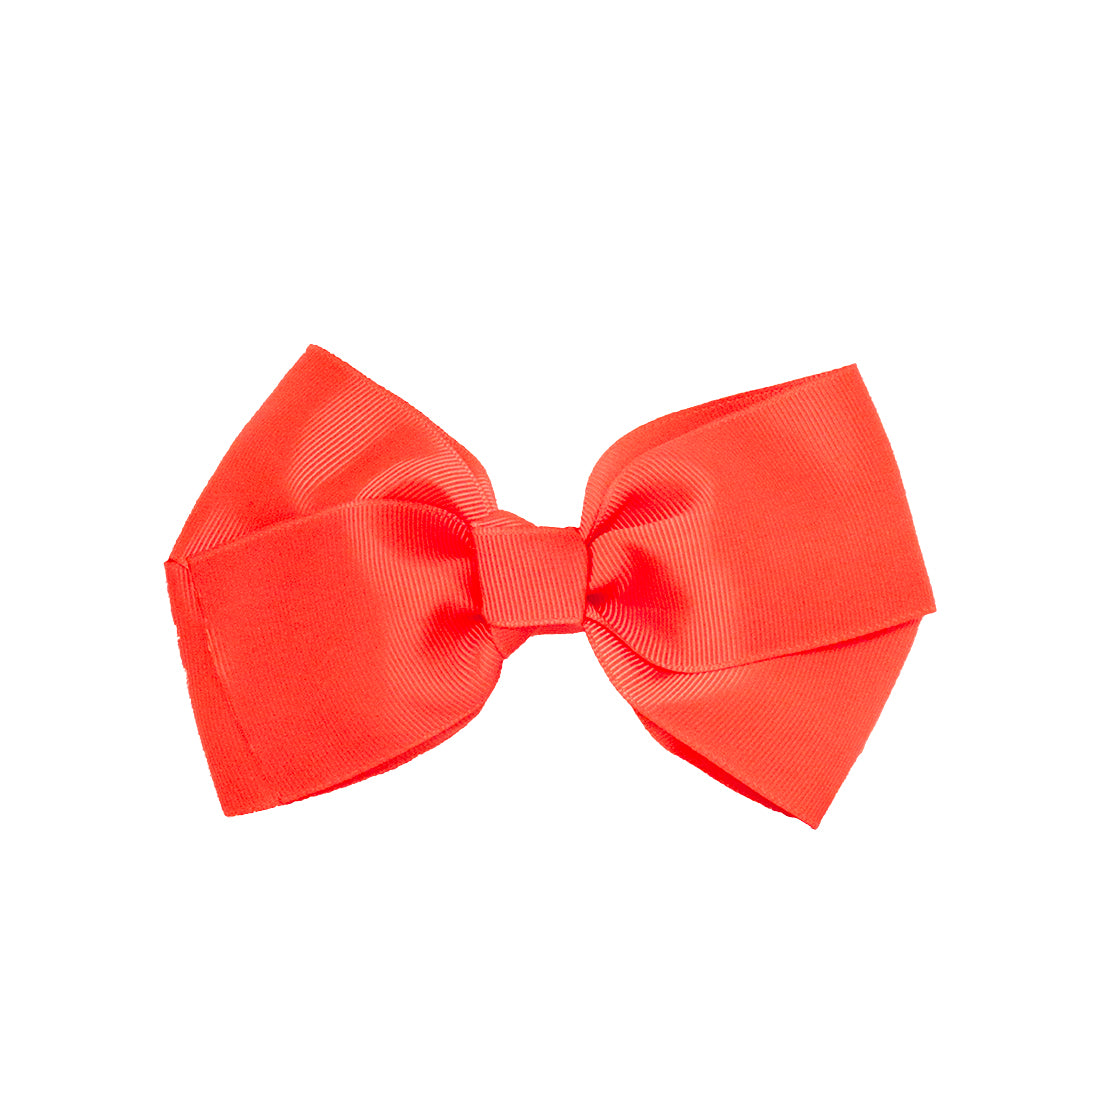 Mia® Spirit Grosgrain Ribbon Bow Barrette - large size - neon orange color - designed by #MiaKaminski of Mia Beauty